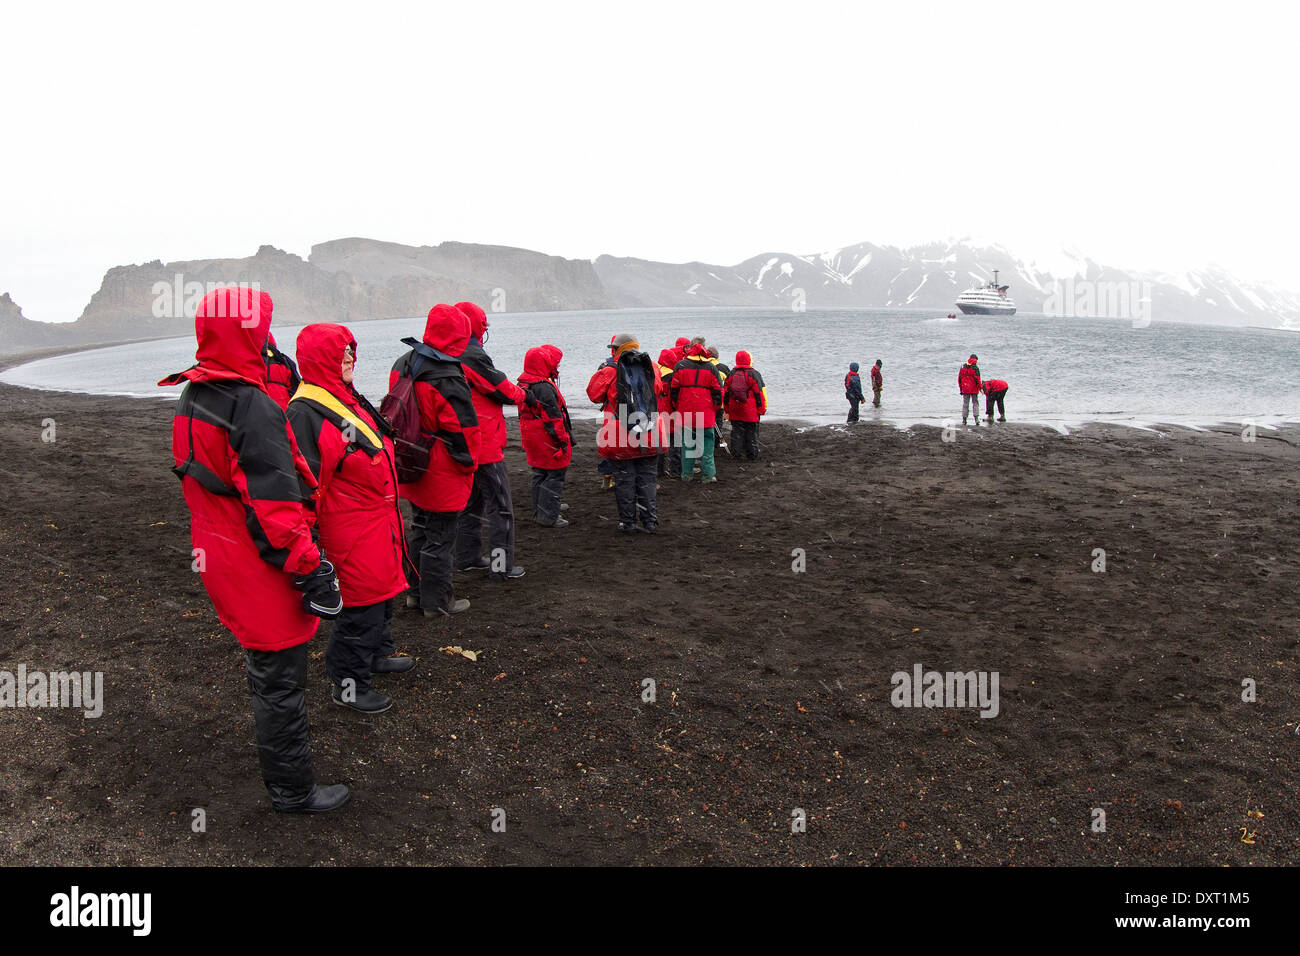 Les passagers des navires de croisière antarctique de quitter la baie des baleiniers, Deception Island par Zodiac. Tourisme en Antarctique. Îles Shetland du Sud. Banque D'Images